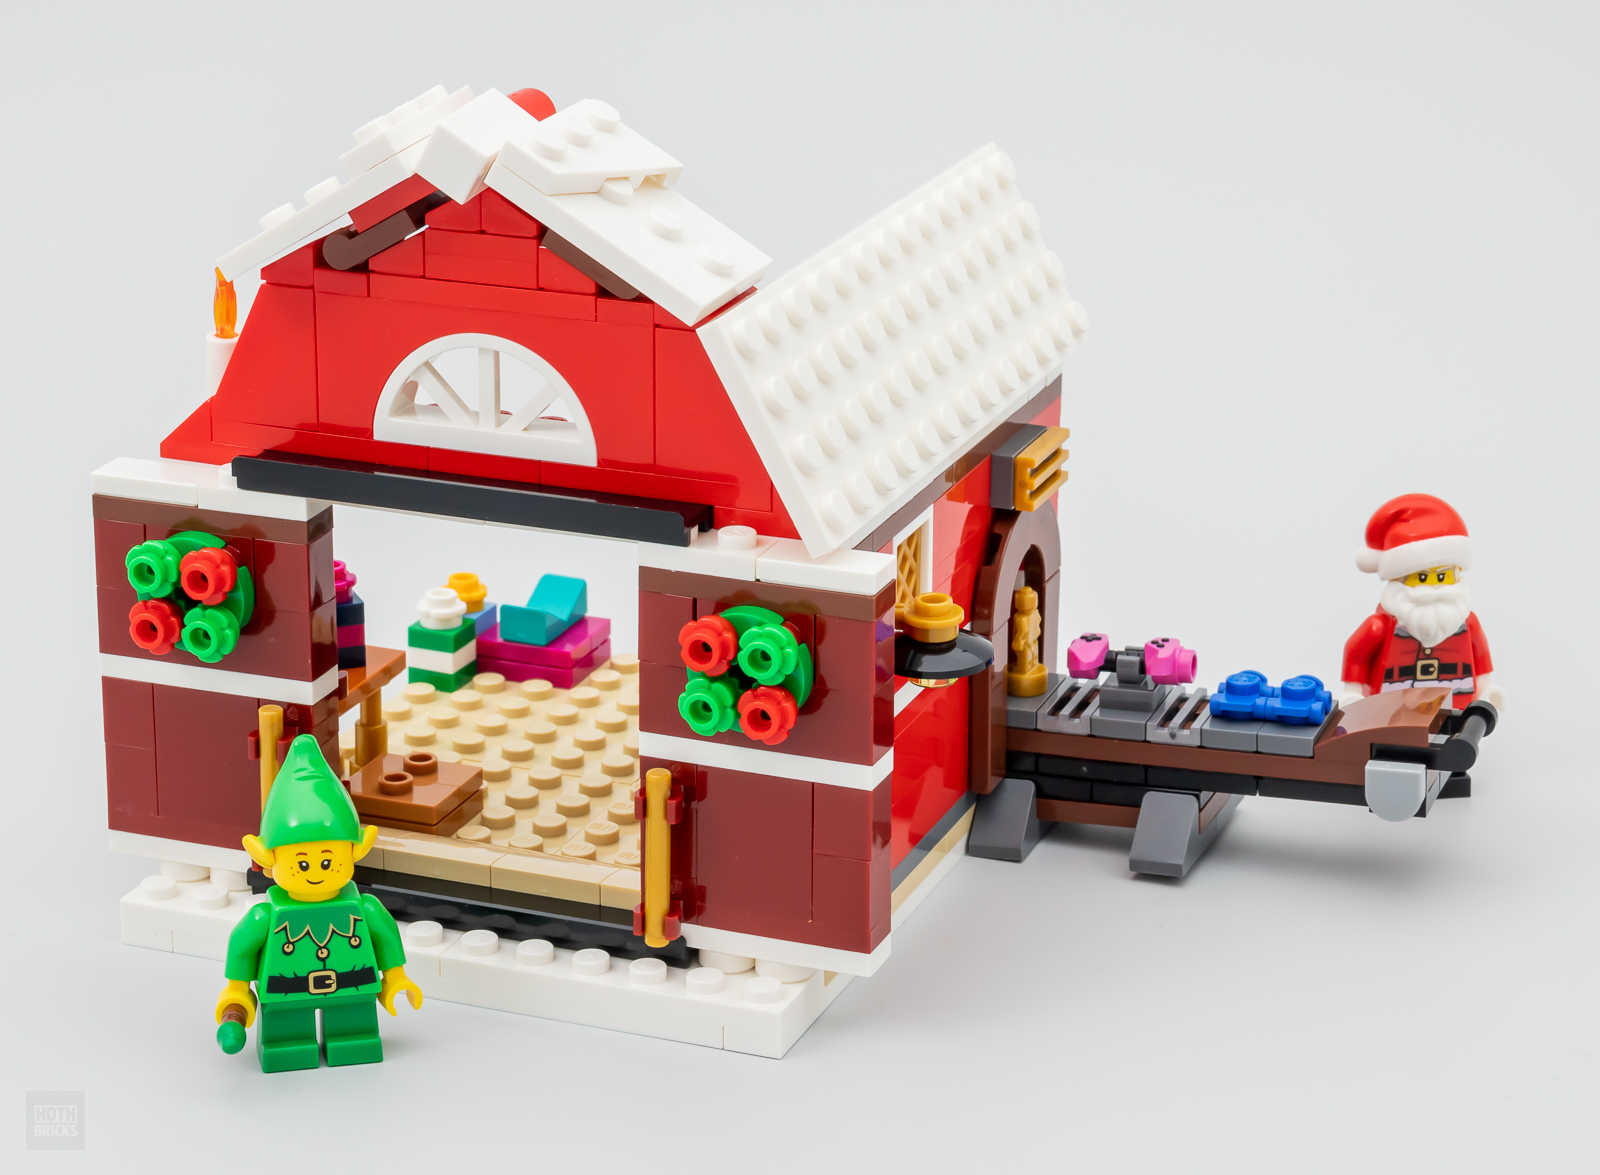 Baie vinnig getoets: LEGO 40565 Kersvader se werkswinkel